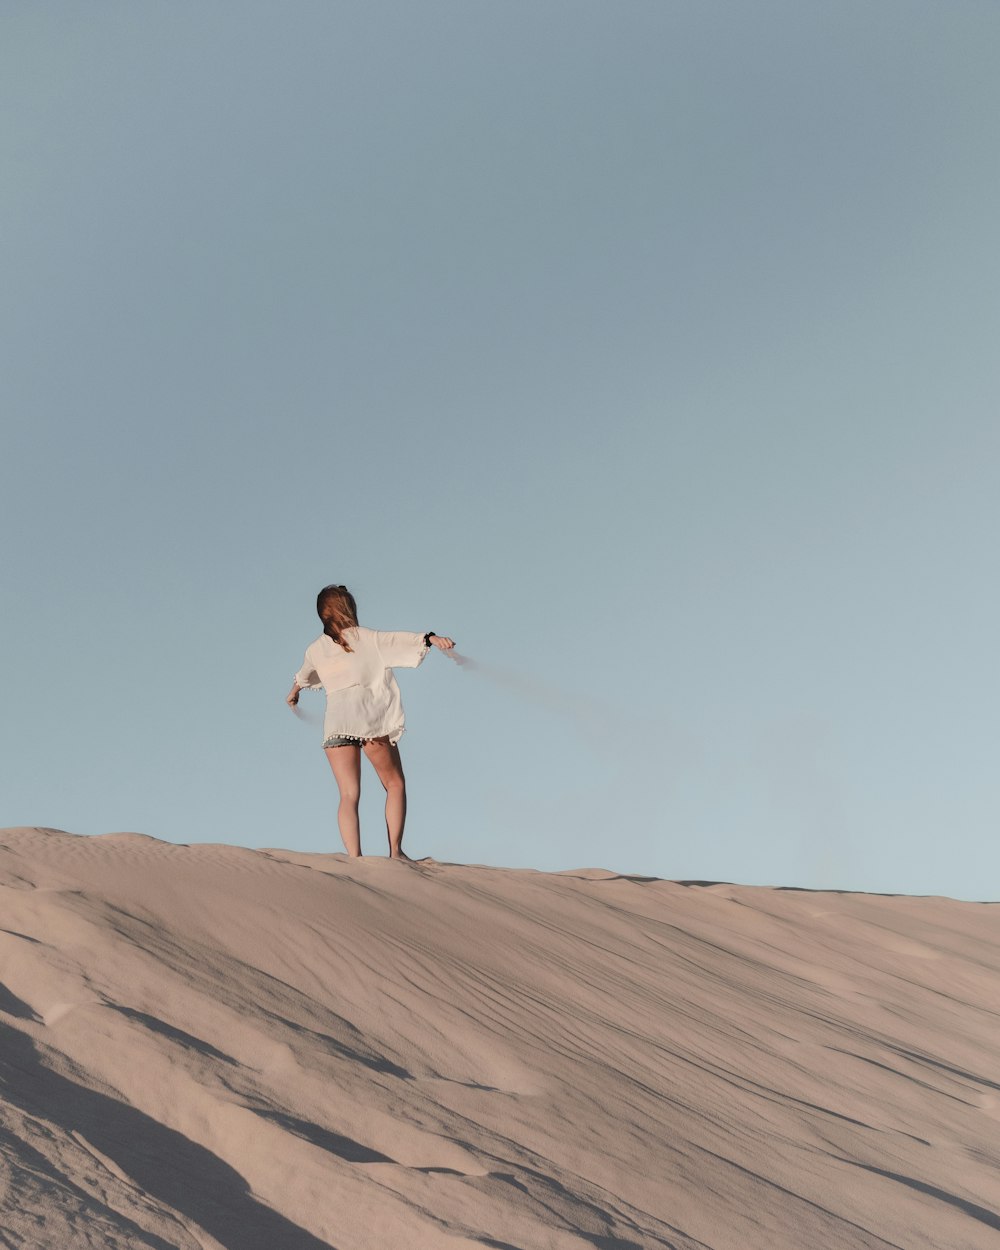 mulher na camisa branca e calções brancos em pé na areia marrom durante o dia